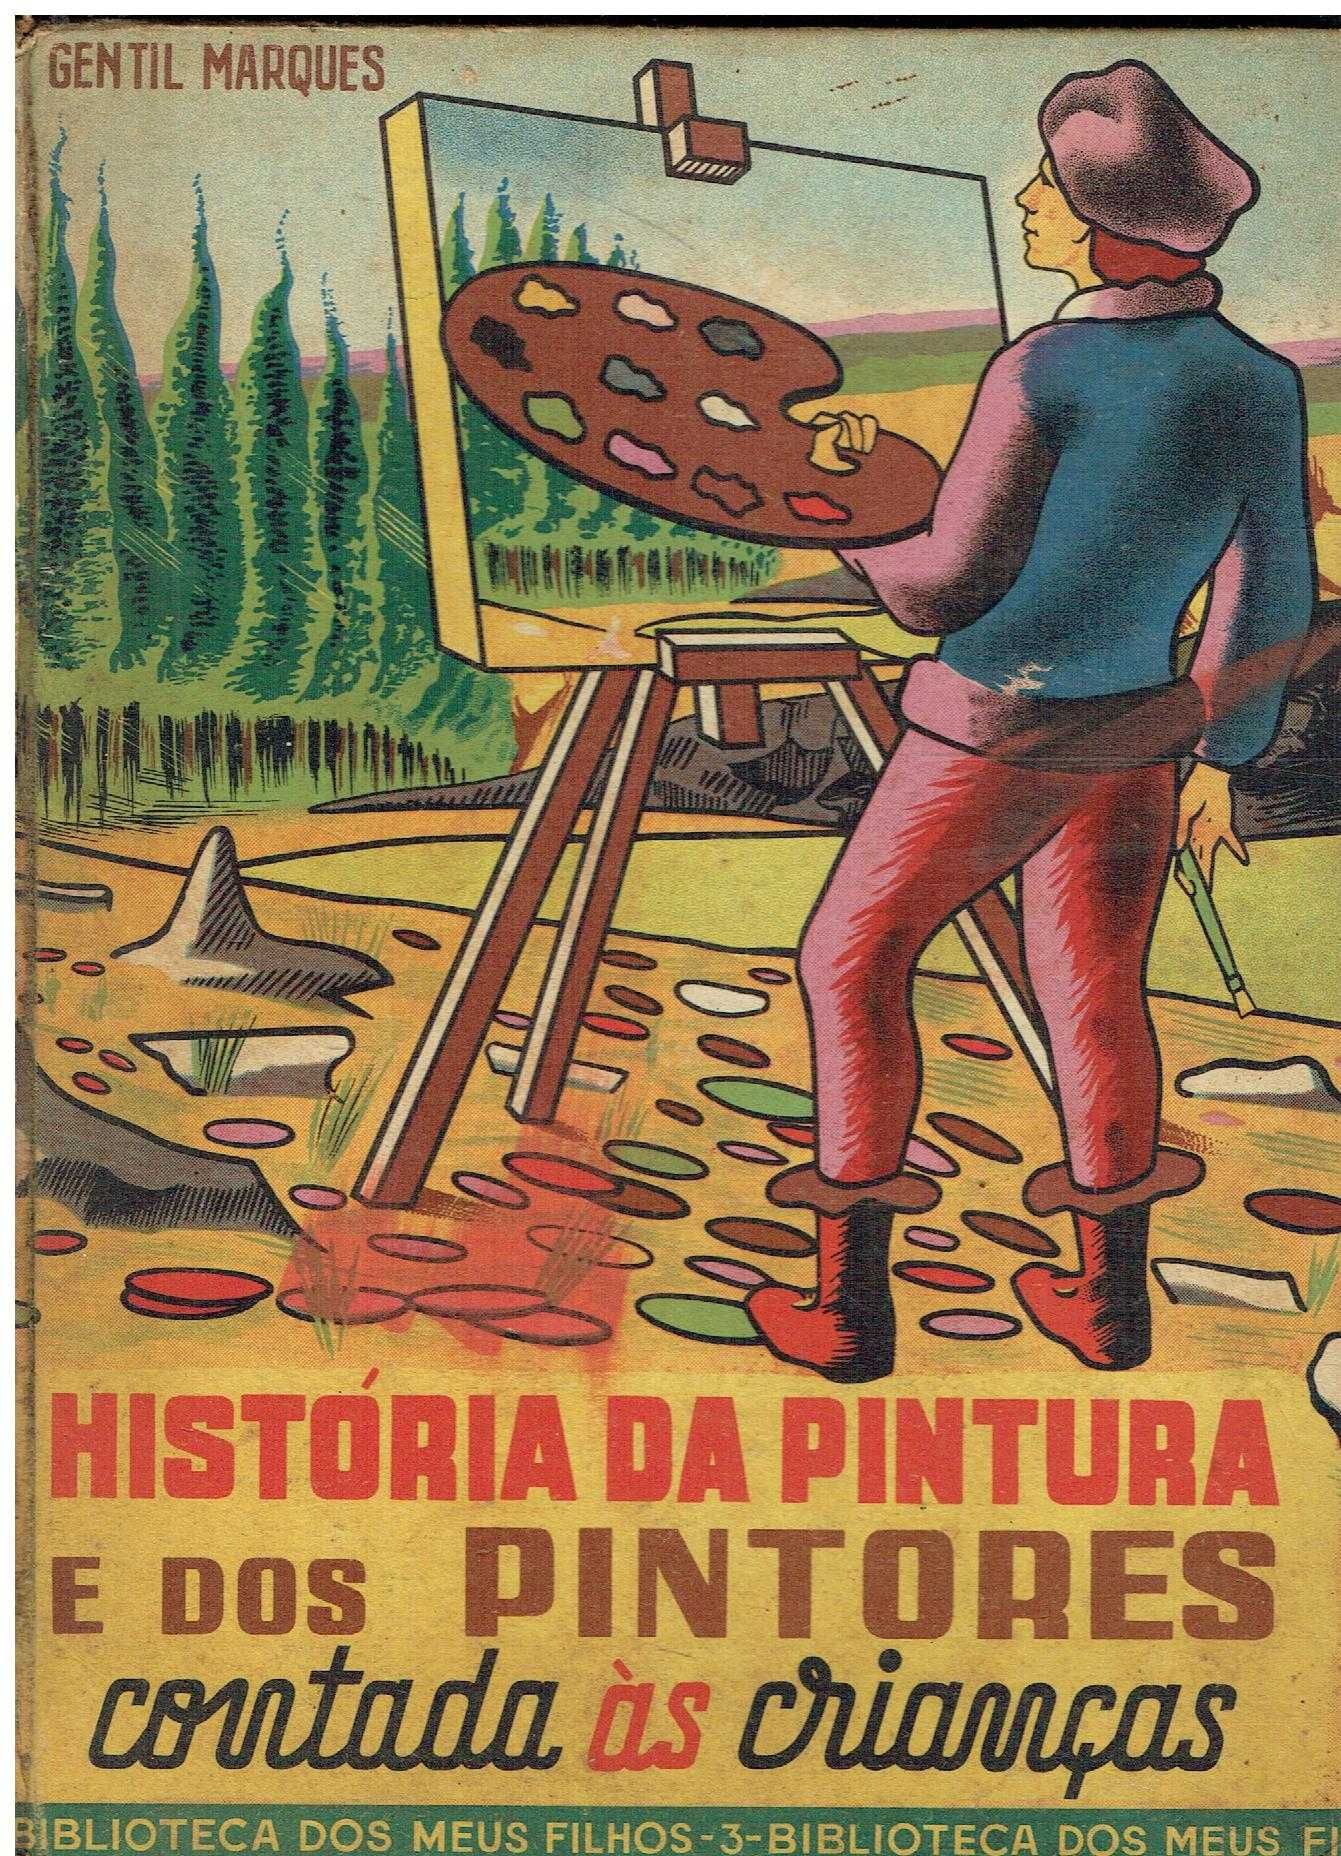 4775
História da pintura  contada às crianças 
de Gentil Marques.